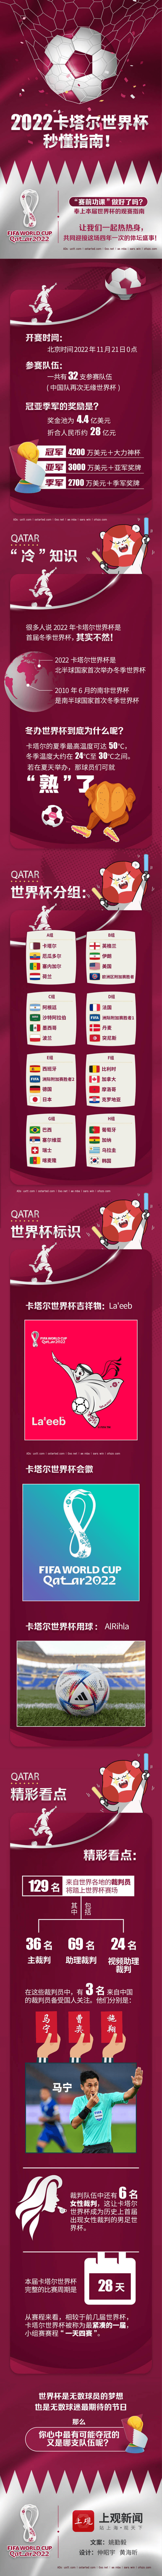 2022卡塔尔世界杯一图